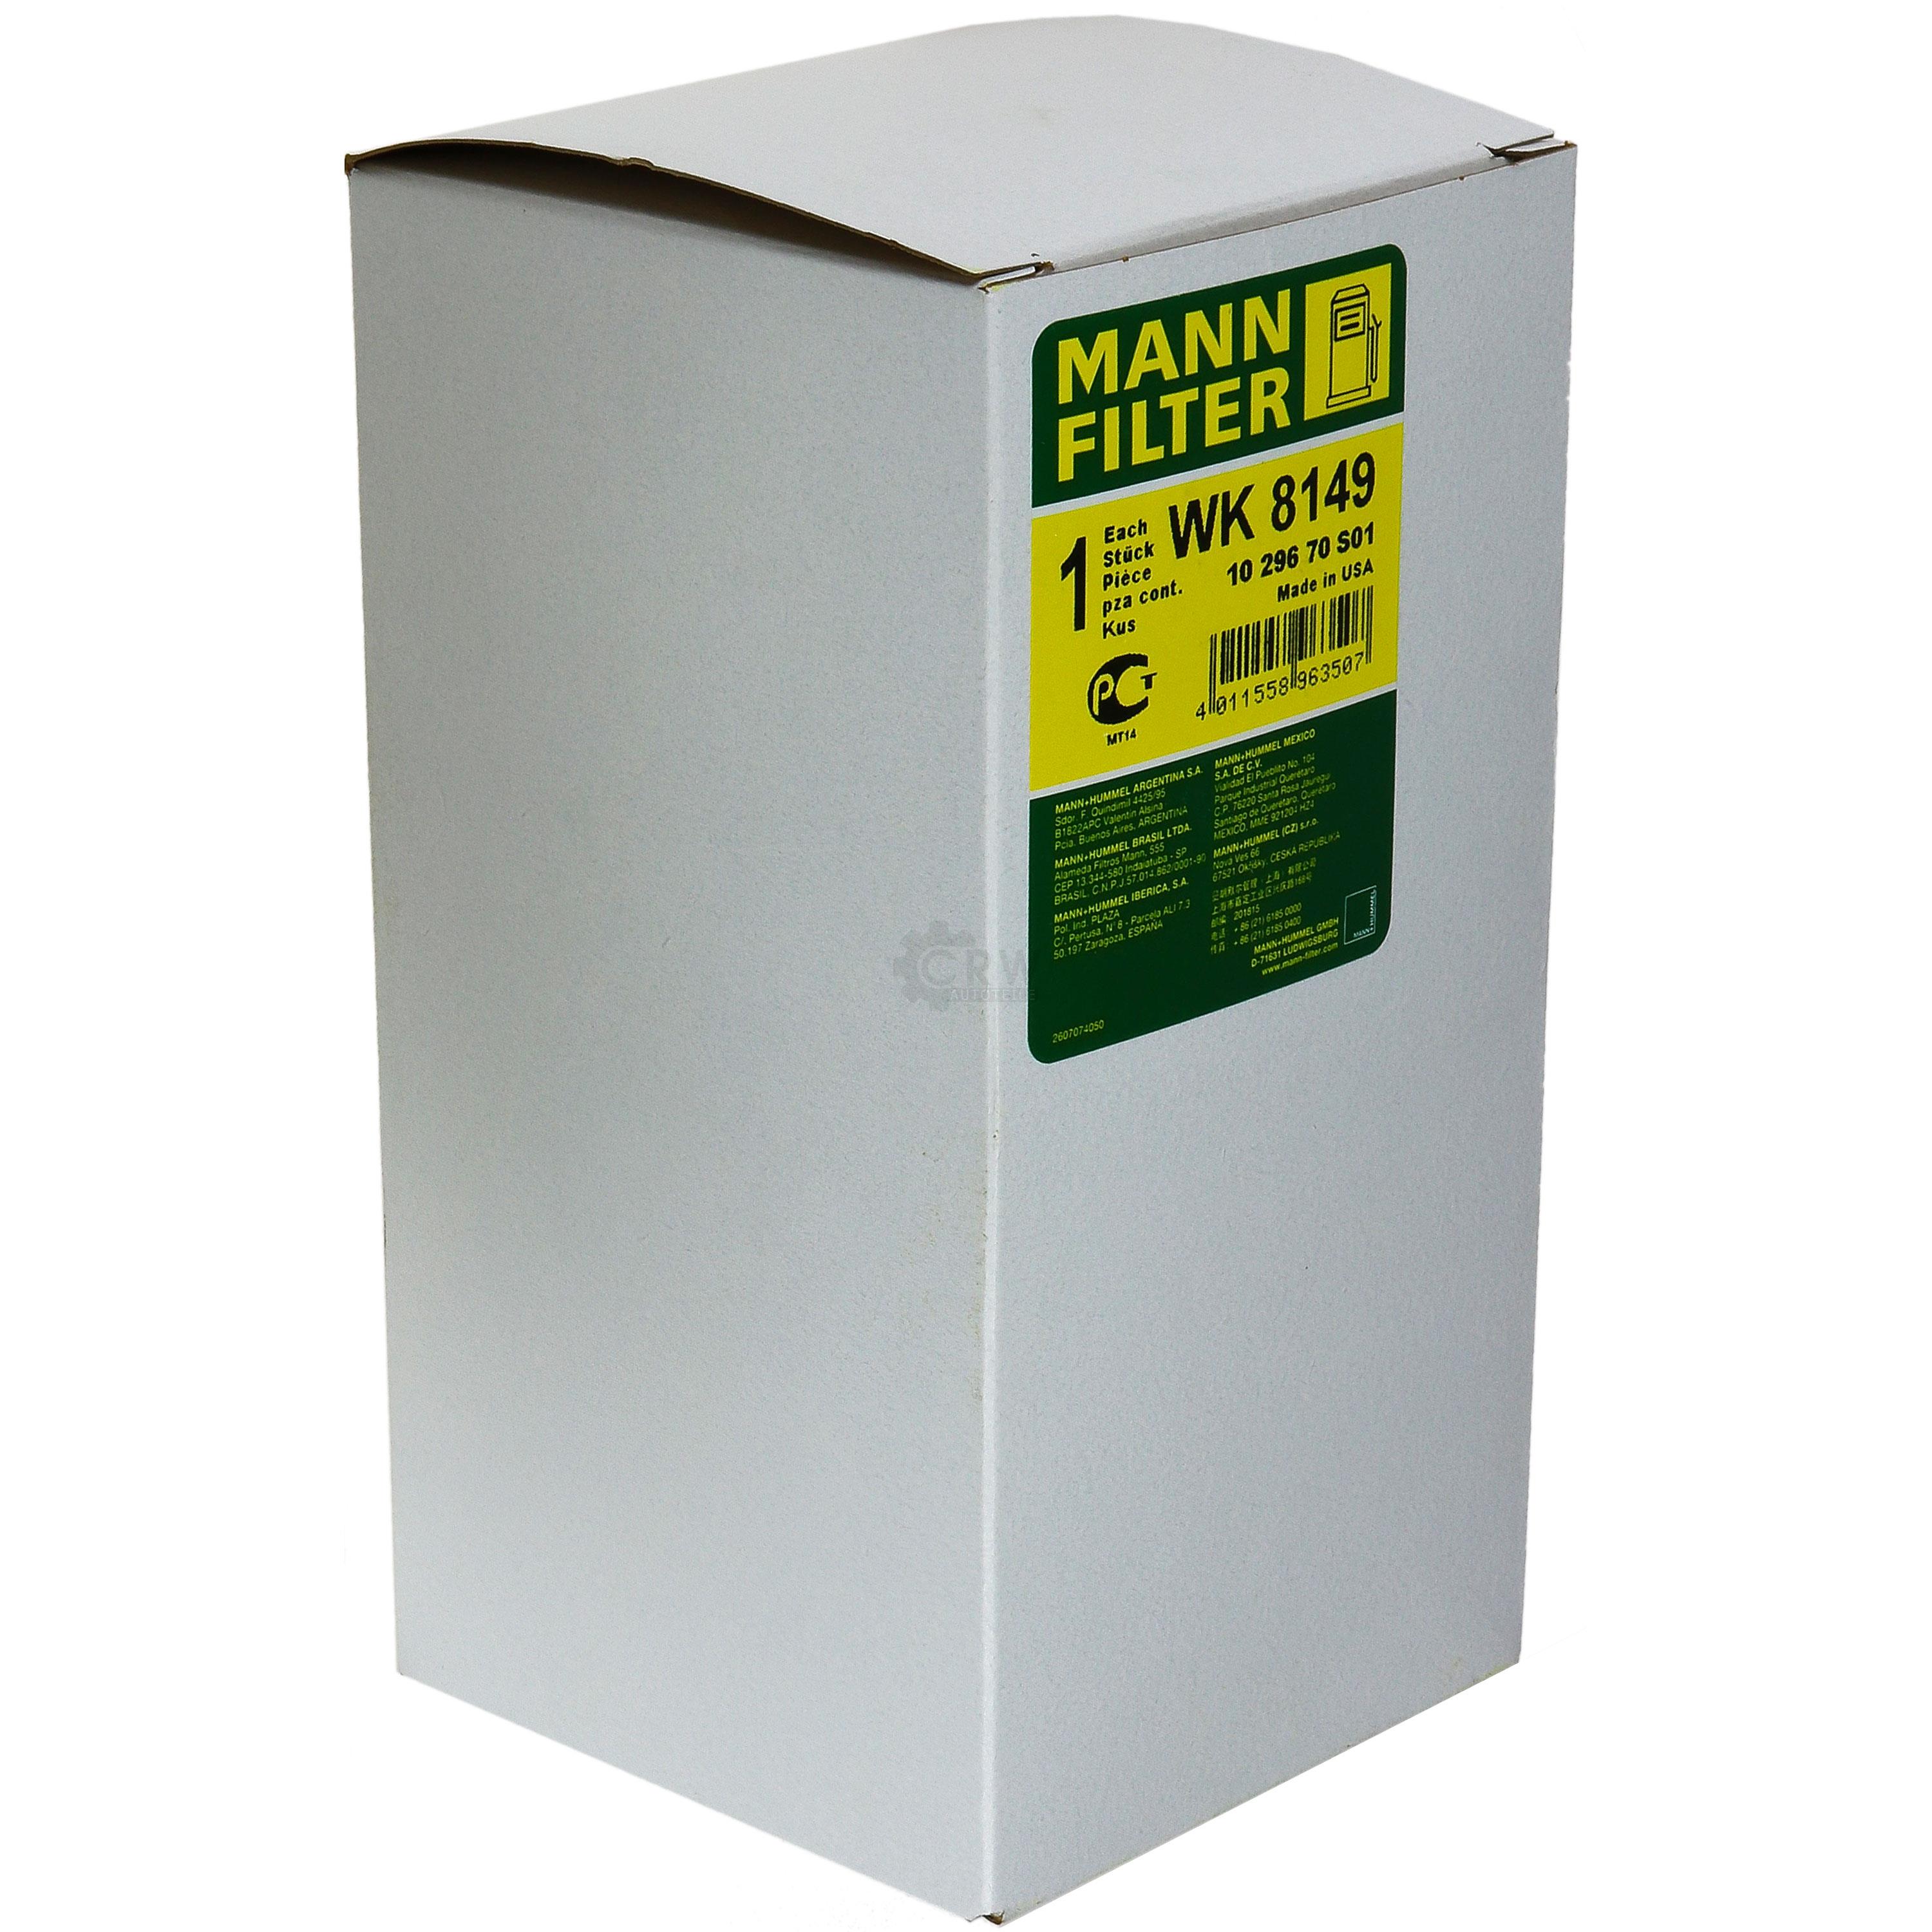 MANN-FILTER Kraftstofffilter WK 8149 Fuel Filter